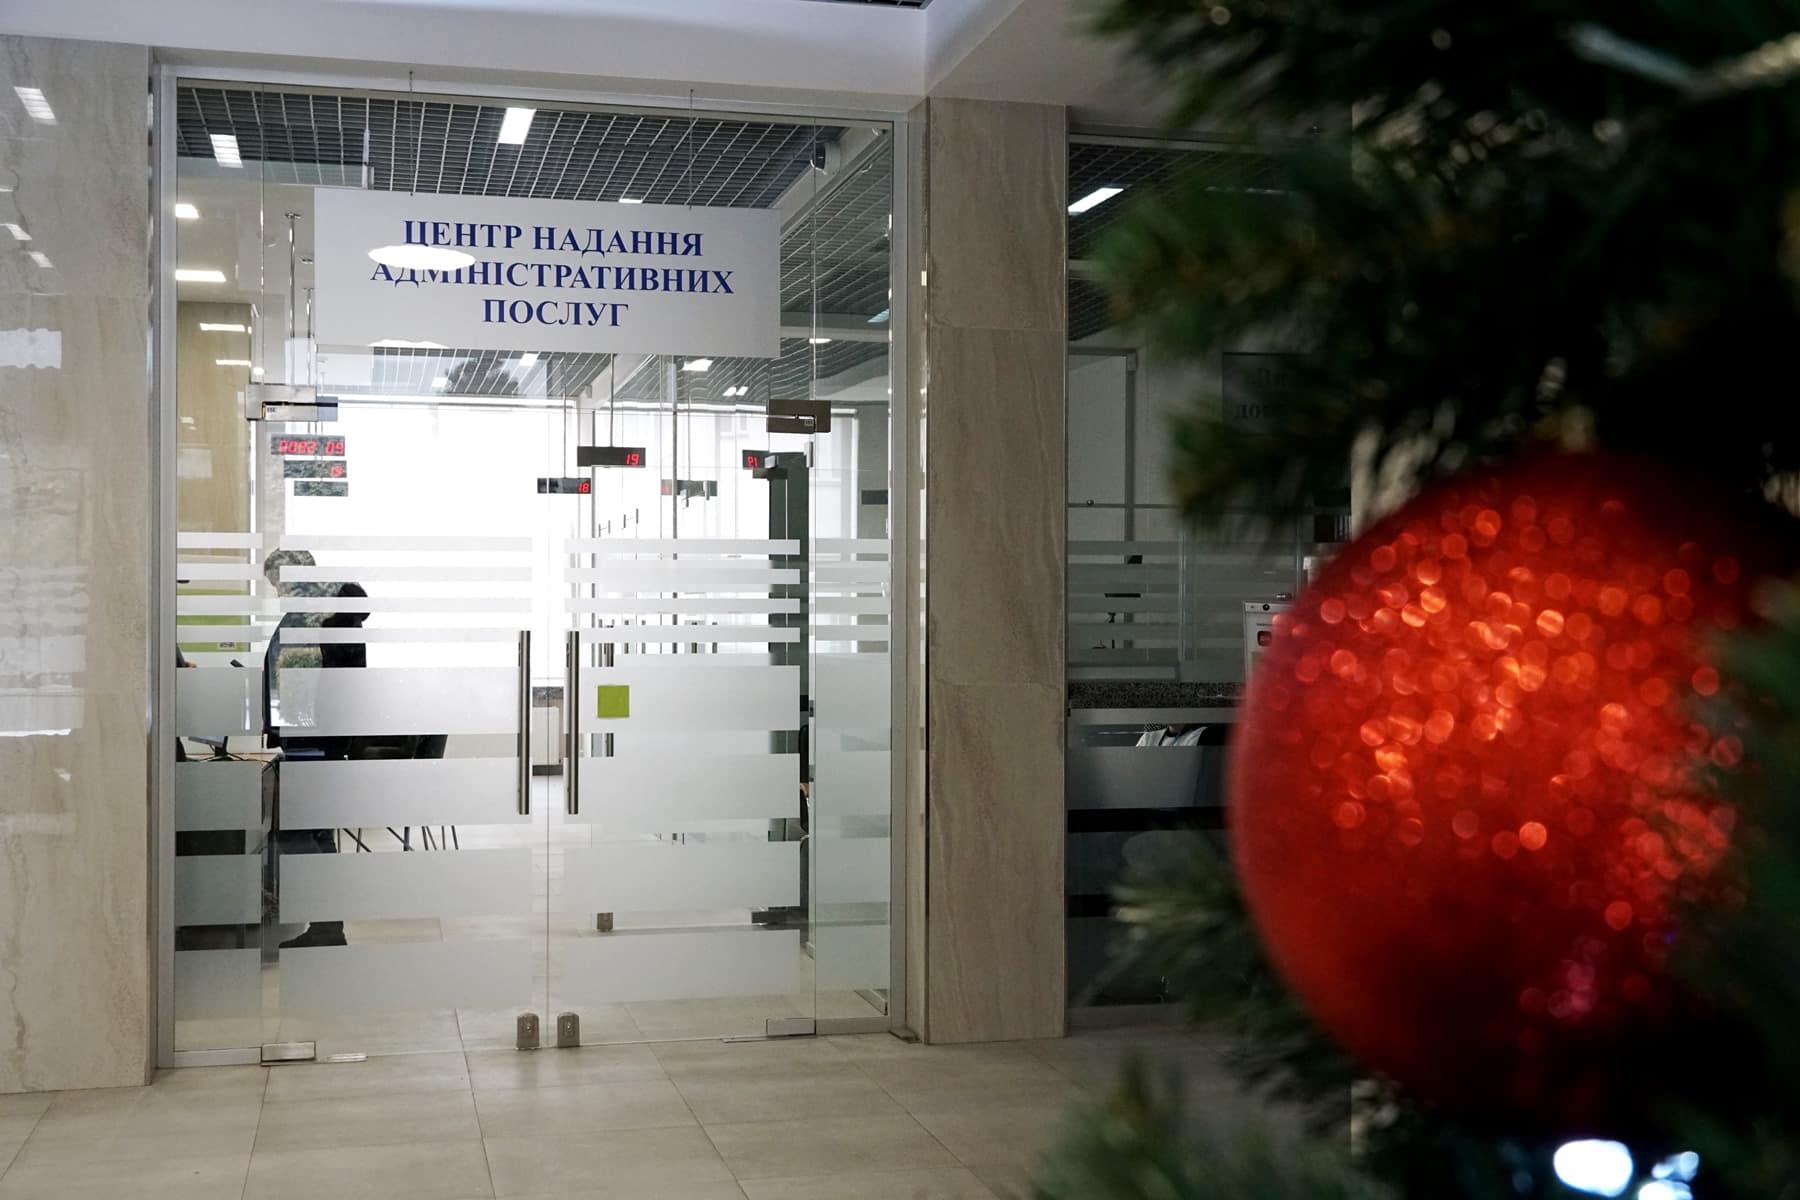 Графік роботи Центру надання адміністративних послуг Ужгородської міської ради у новорічно-різдвяні свята